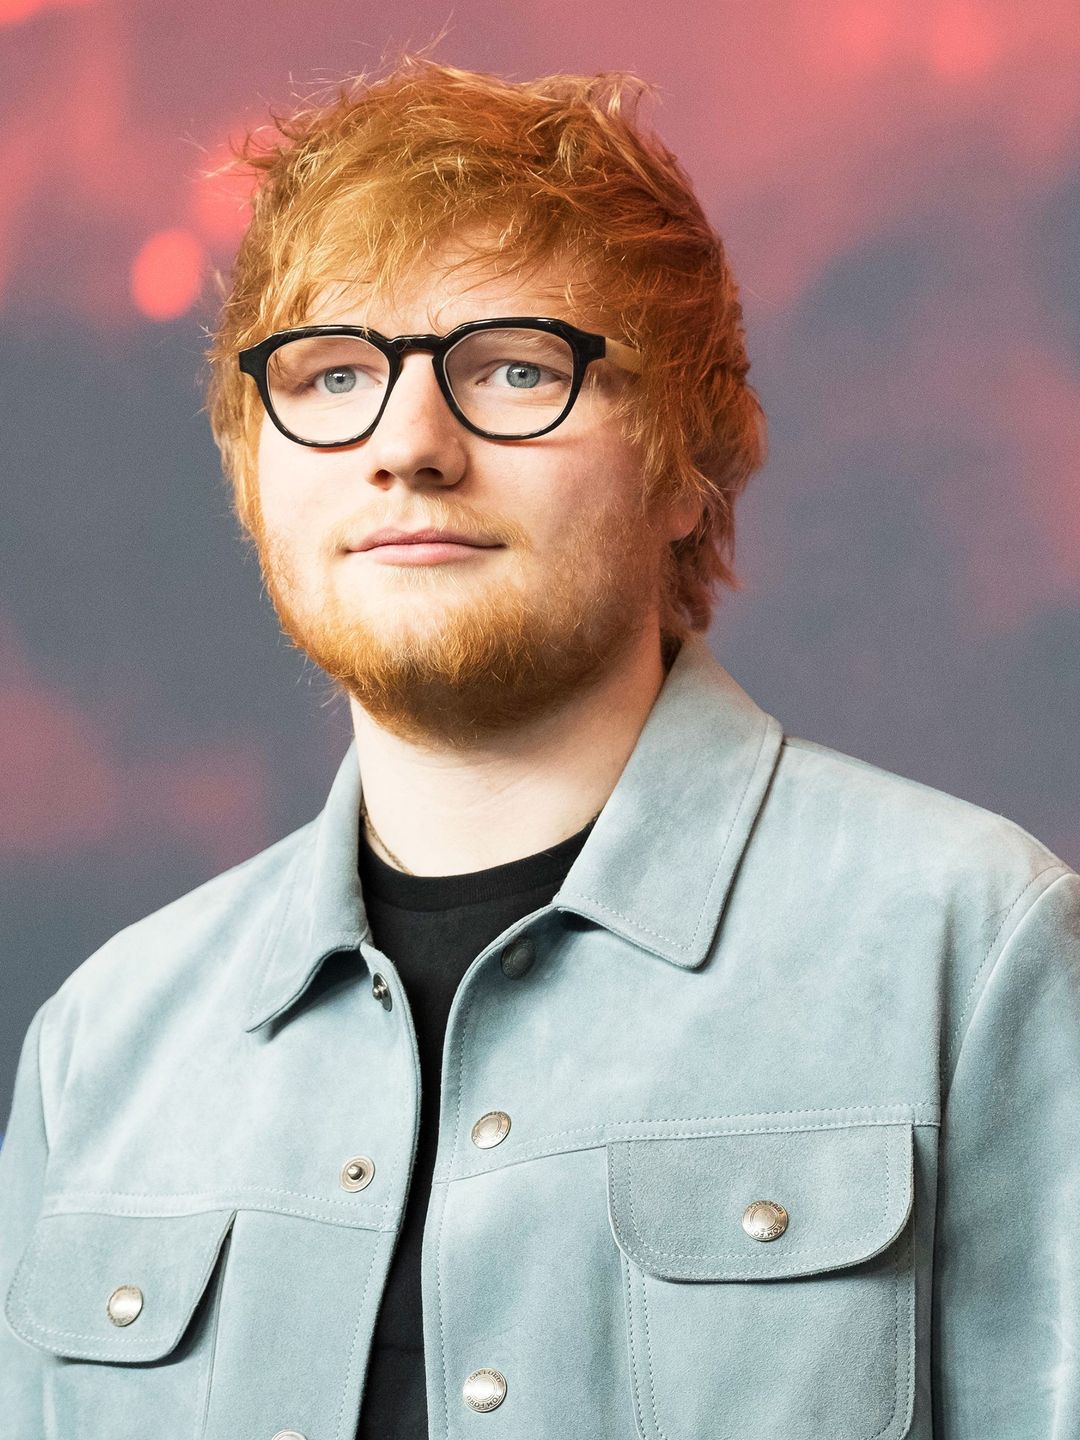 Ed Sheeran love story